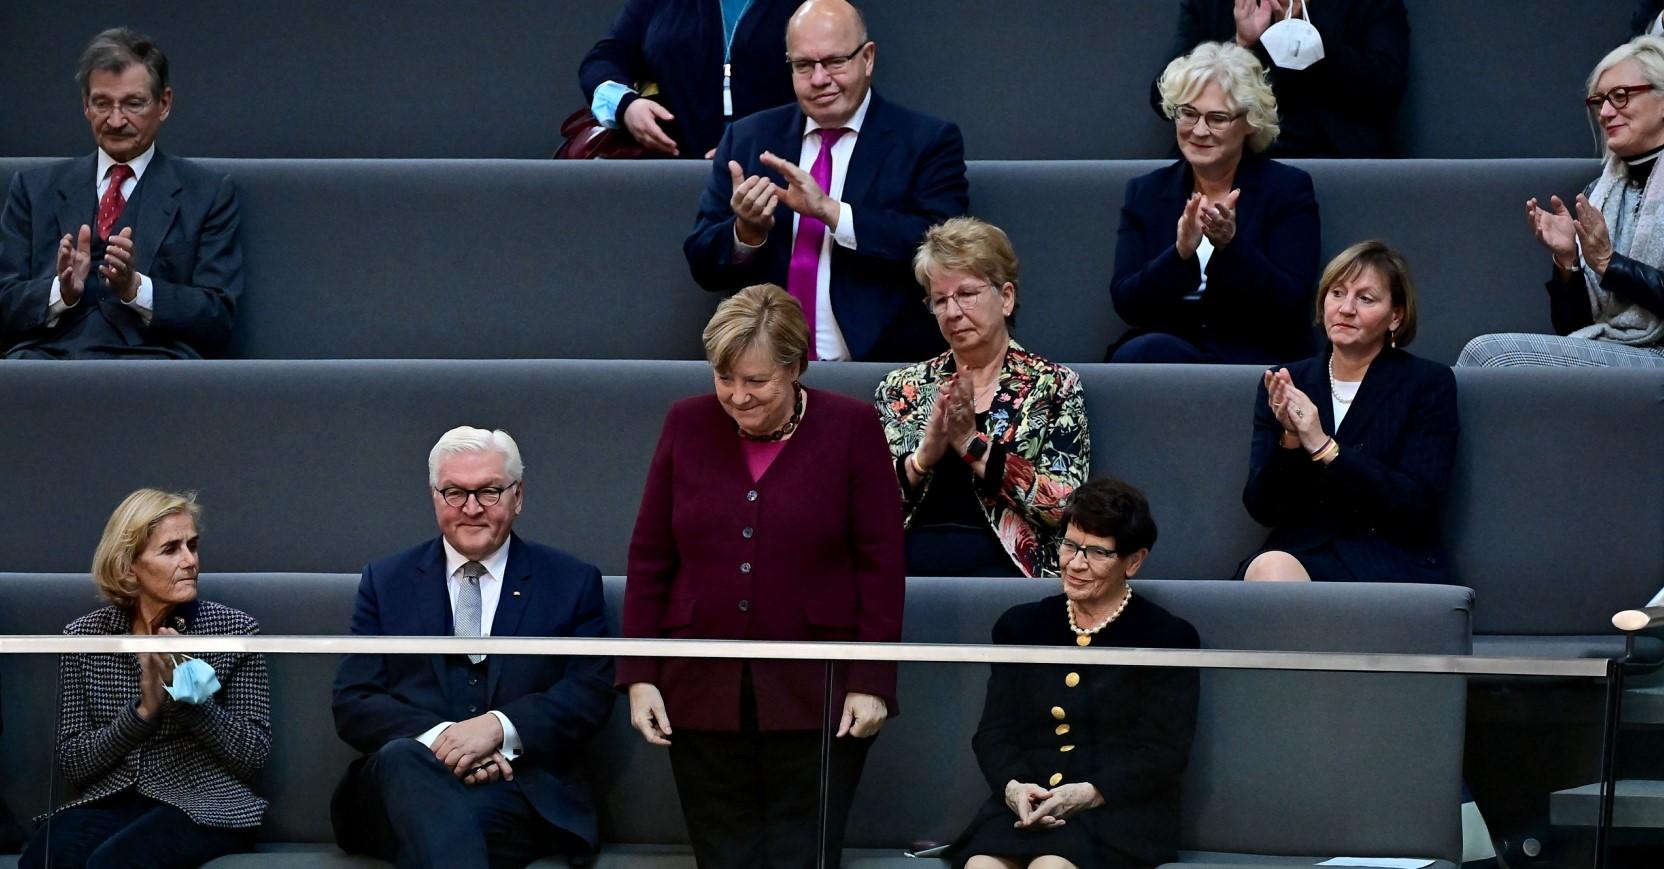 Merkel prisustvovala prvoj sjednici novog saziva Bundestaga